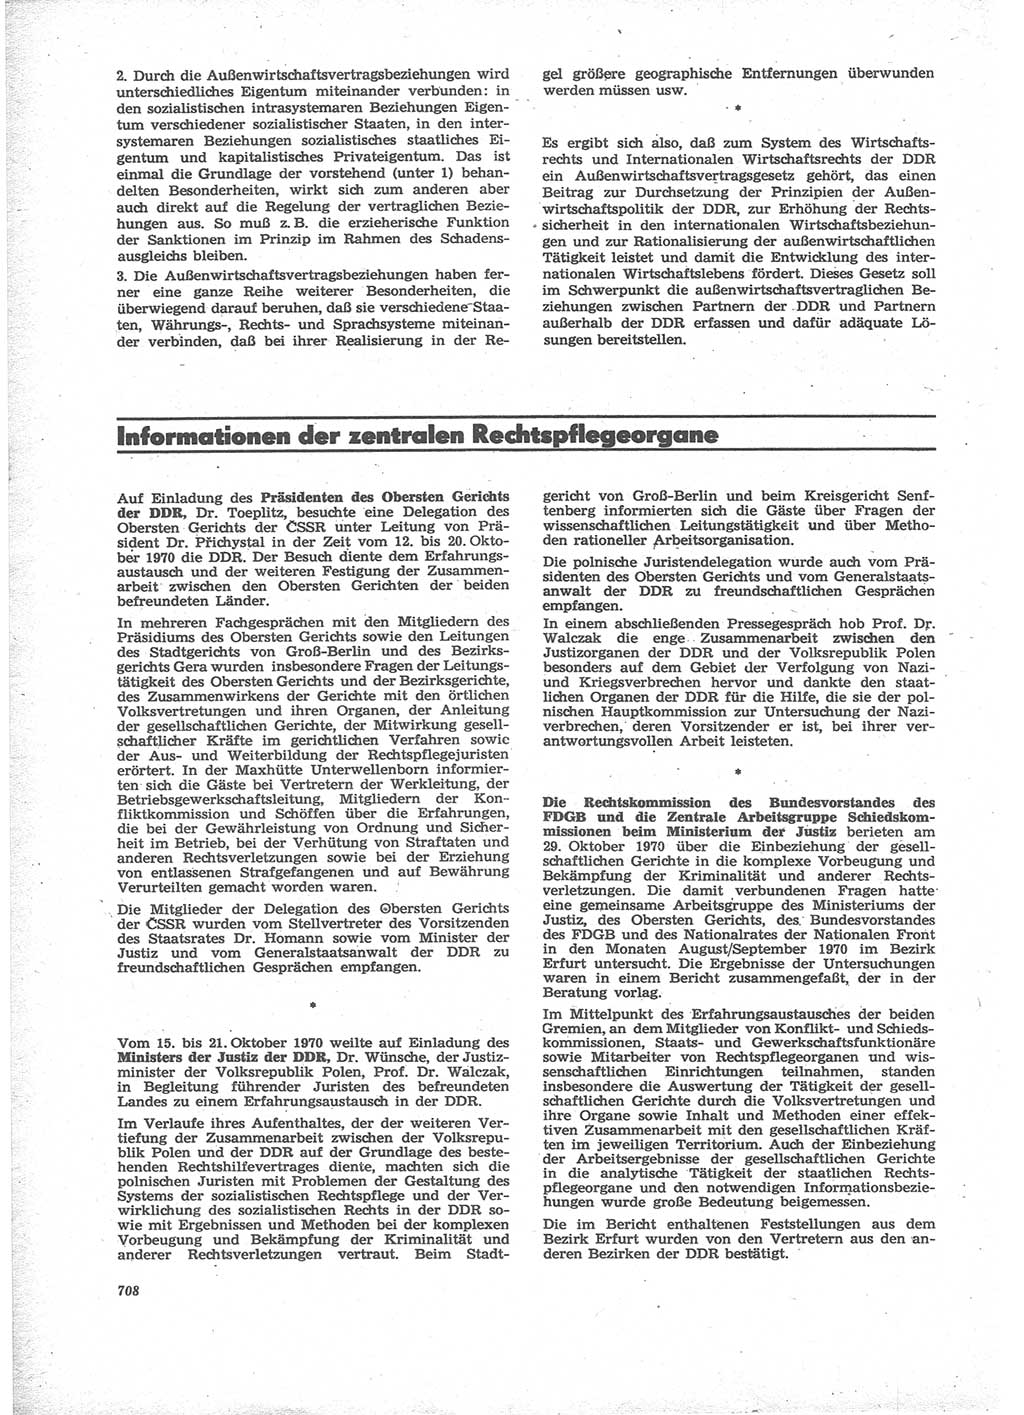 Neue Justiz (NJ), Zeitschrift für Recht und Rechtswissenschaft [Deutsche Demokratische Republik (DDR)], 24. Jahrgang 1970, Seite 708 (NJ DDR 1970, S. 708)